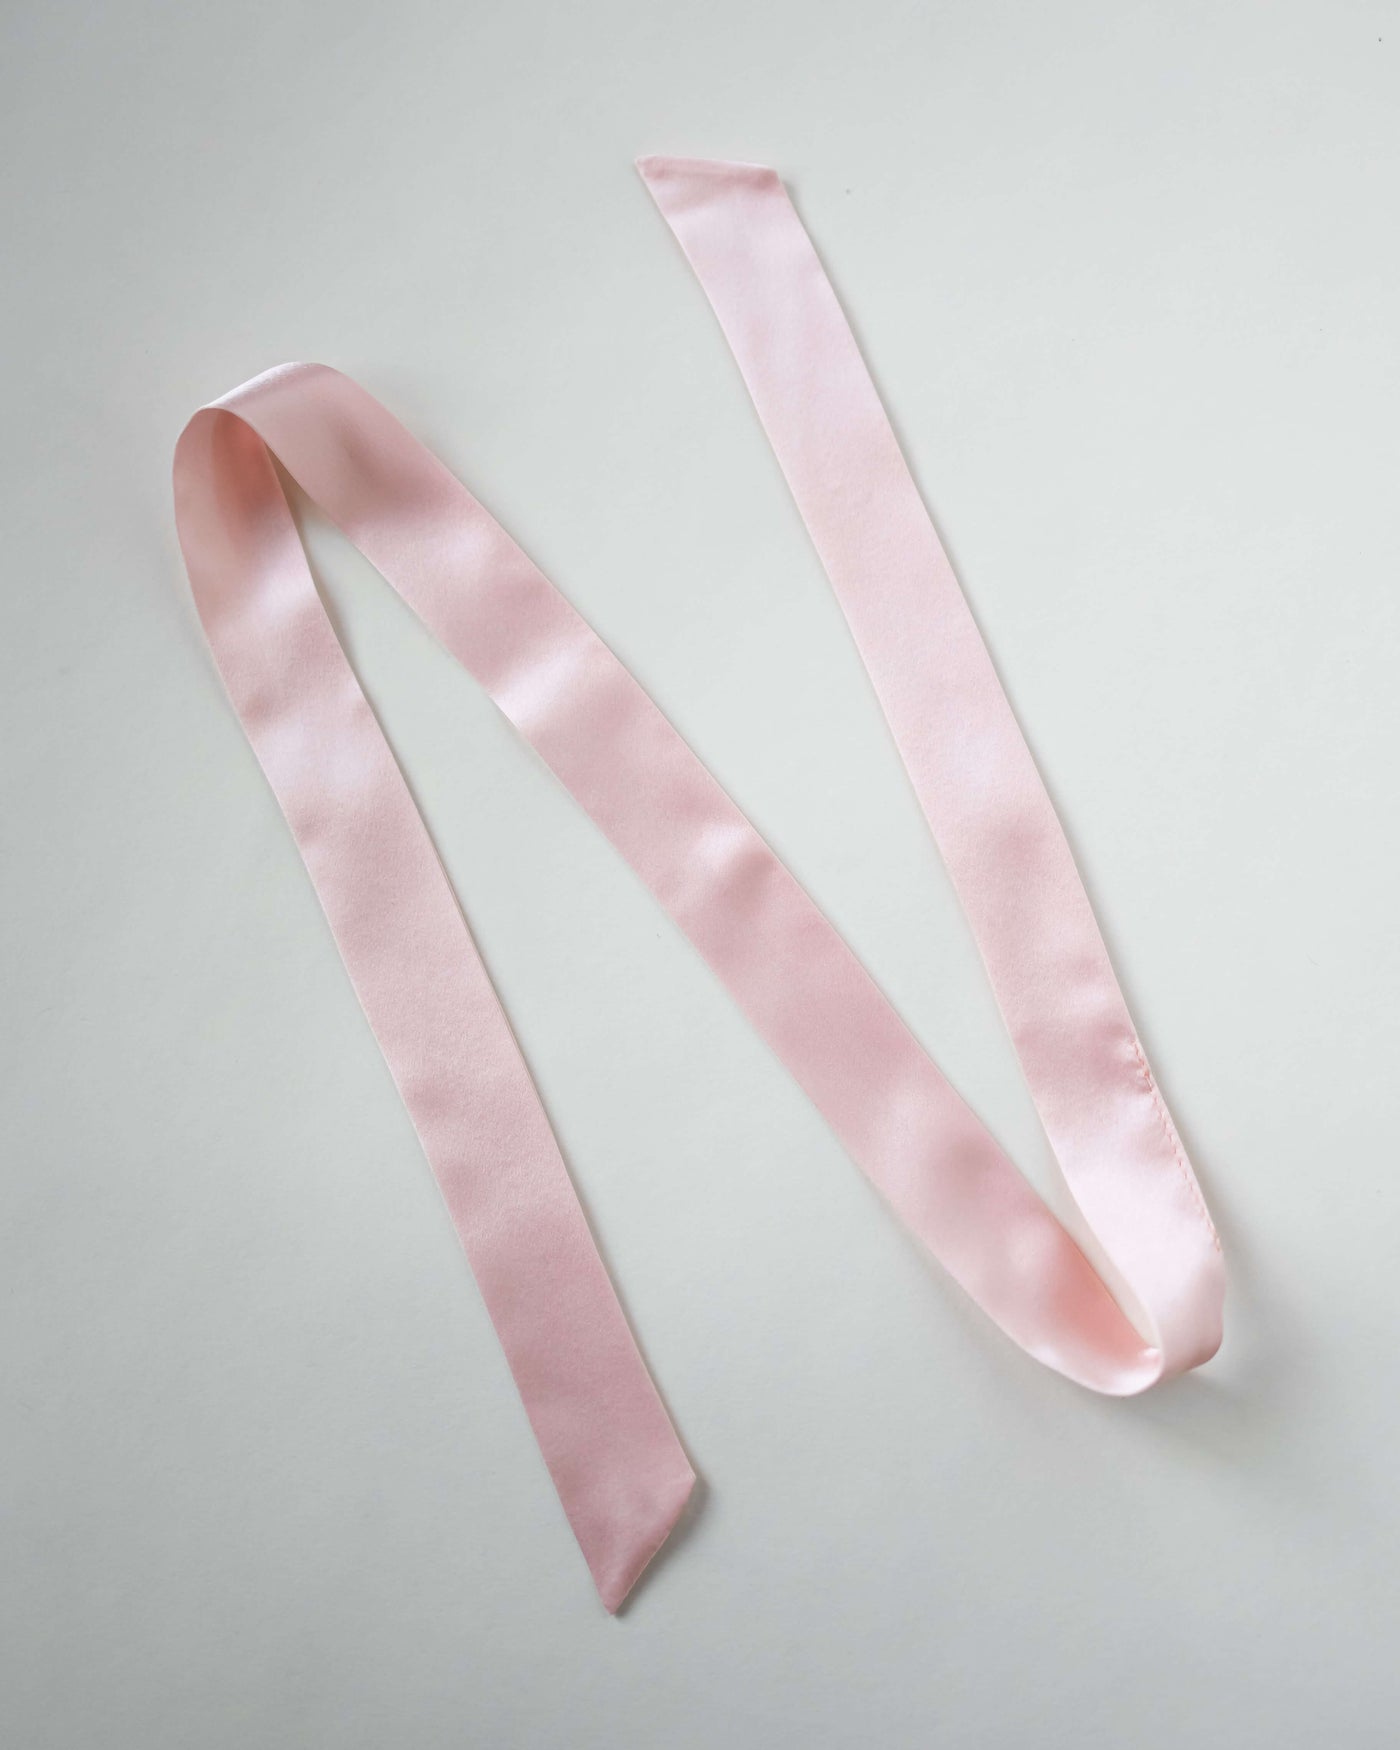 Haarband aus reiner Seide in rosa von CURLY N COVERED vor weißem Hintergrund ausgelegt